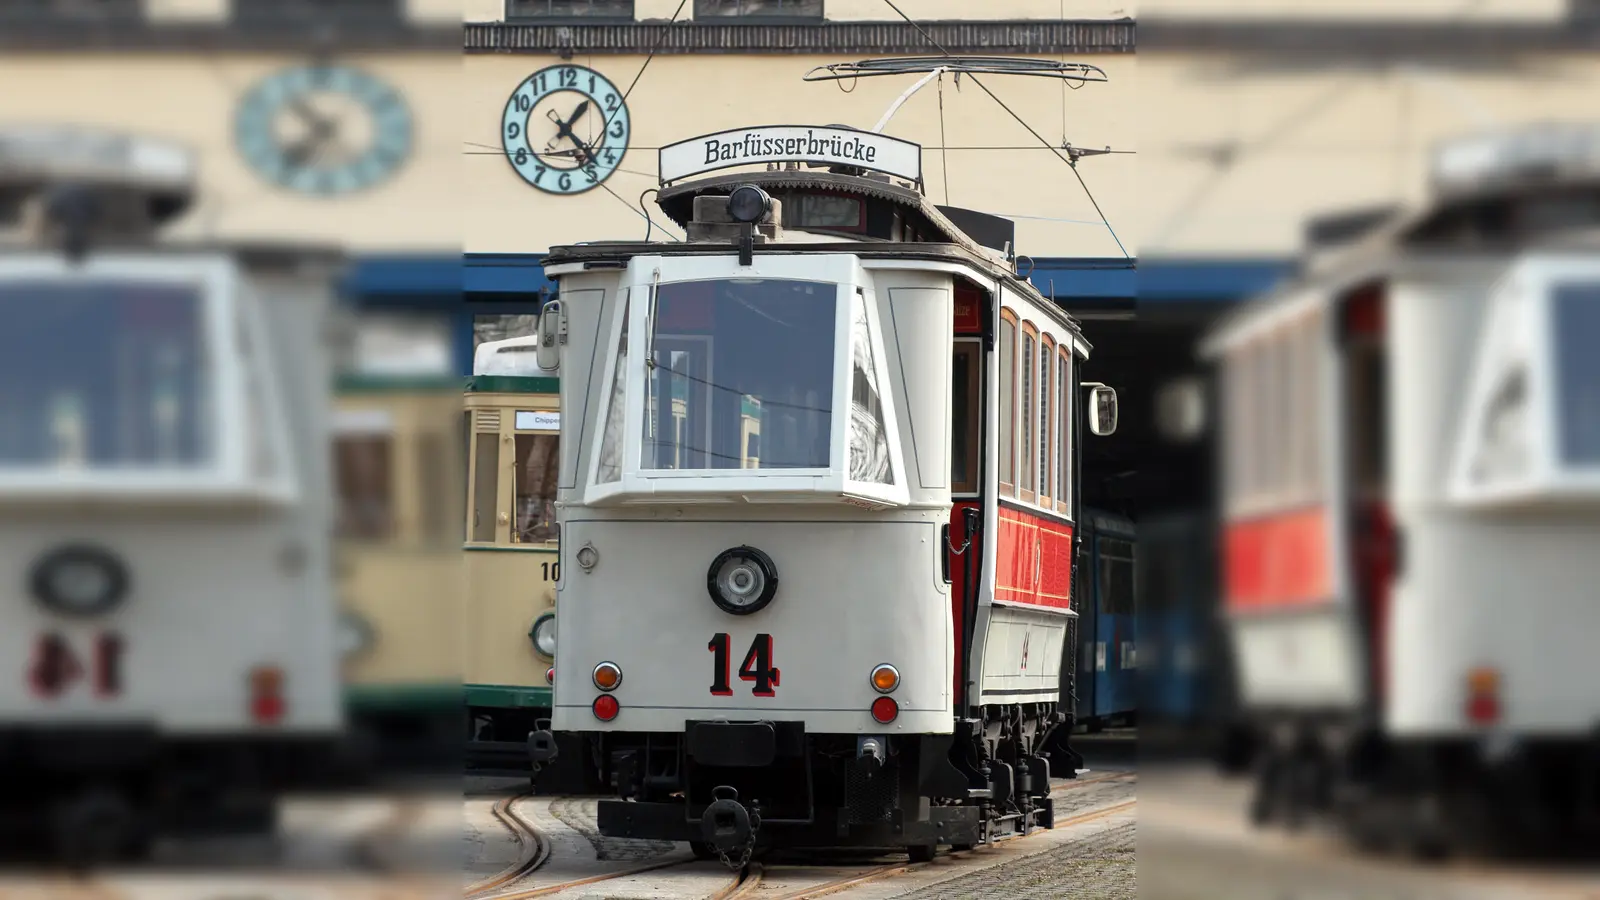 Von 1898 stammt die älteste Augsburger Straßenbahn, die am Freitag, 22. September, von 14 bis 18 Uhr im Straßenbahnbetriebshof zu sehen sein wird. Auch der neueste Zugang zur Flotte, die Tramlink, wird an diesem Tag zum ersten Mal der Öffentlichkeit präsentiert. (Foto: swa / Thomas Hosemann)